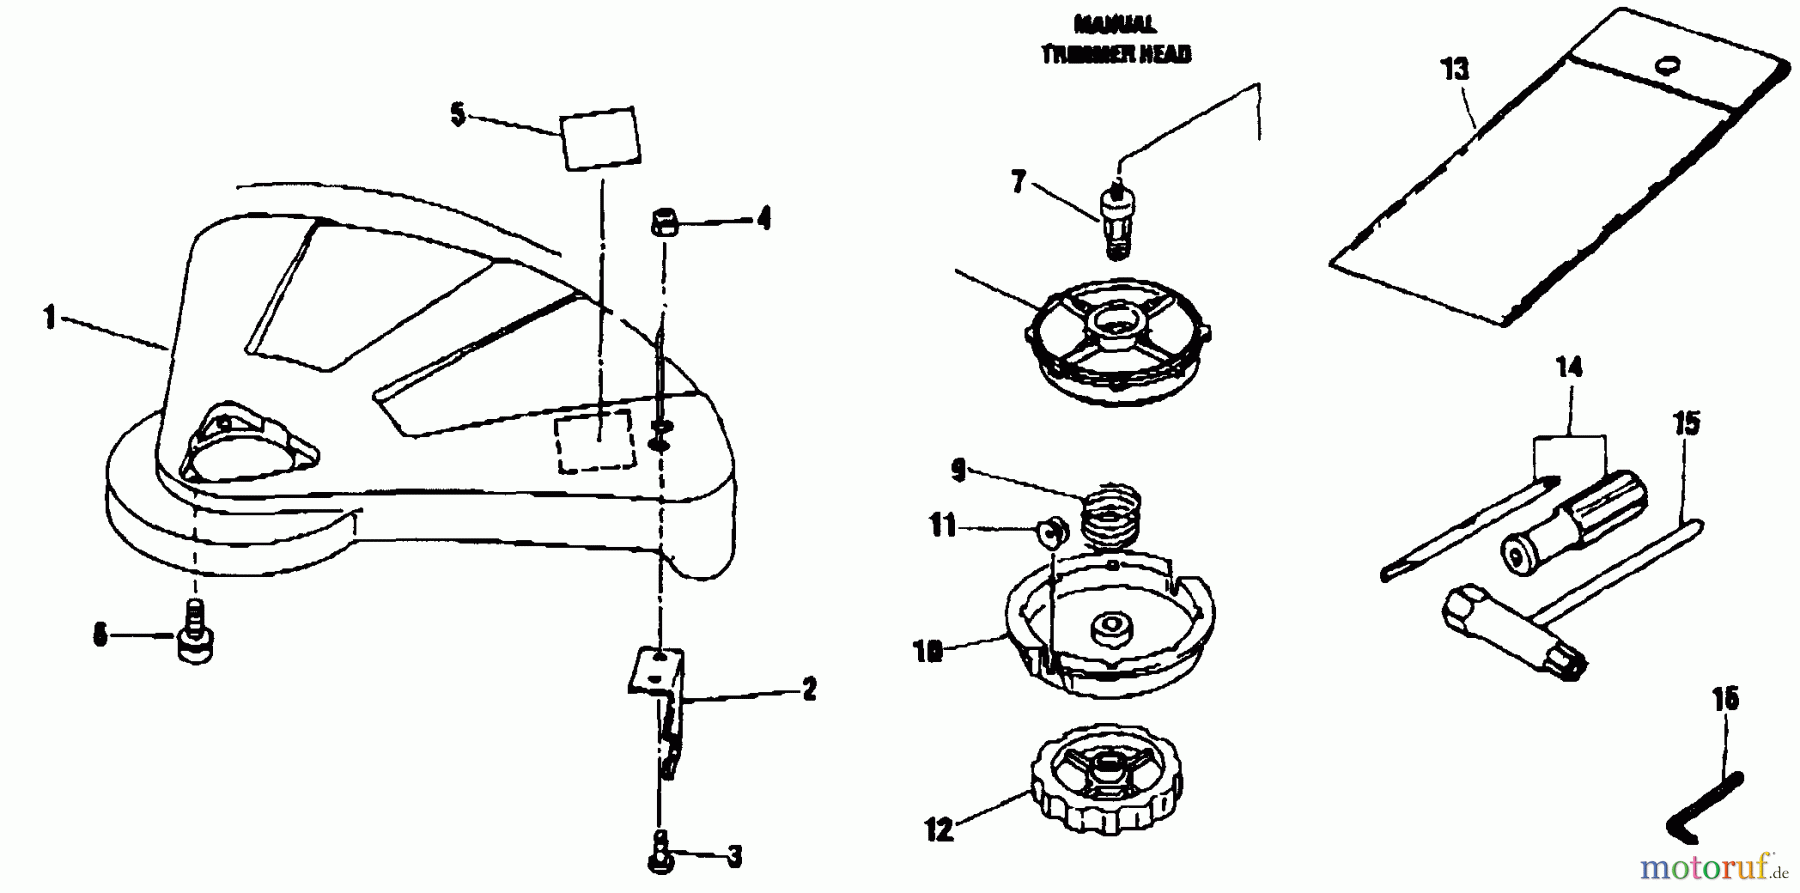  Shindaiwa Trimmer, Faden / Bürste F20 - Shindaiwa String Trimmer Accessories (Part 1)